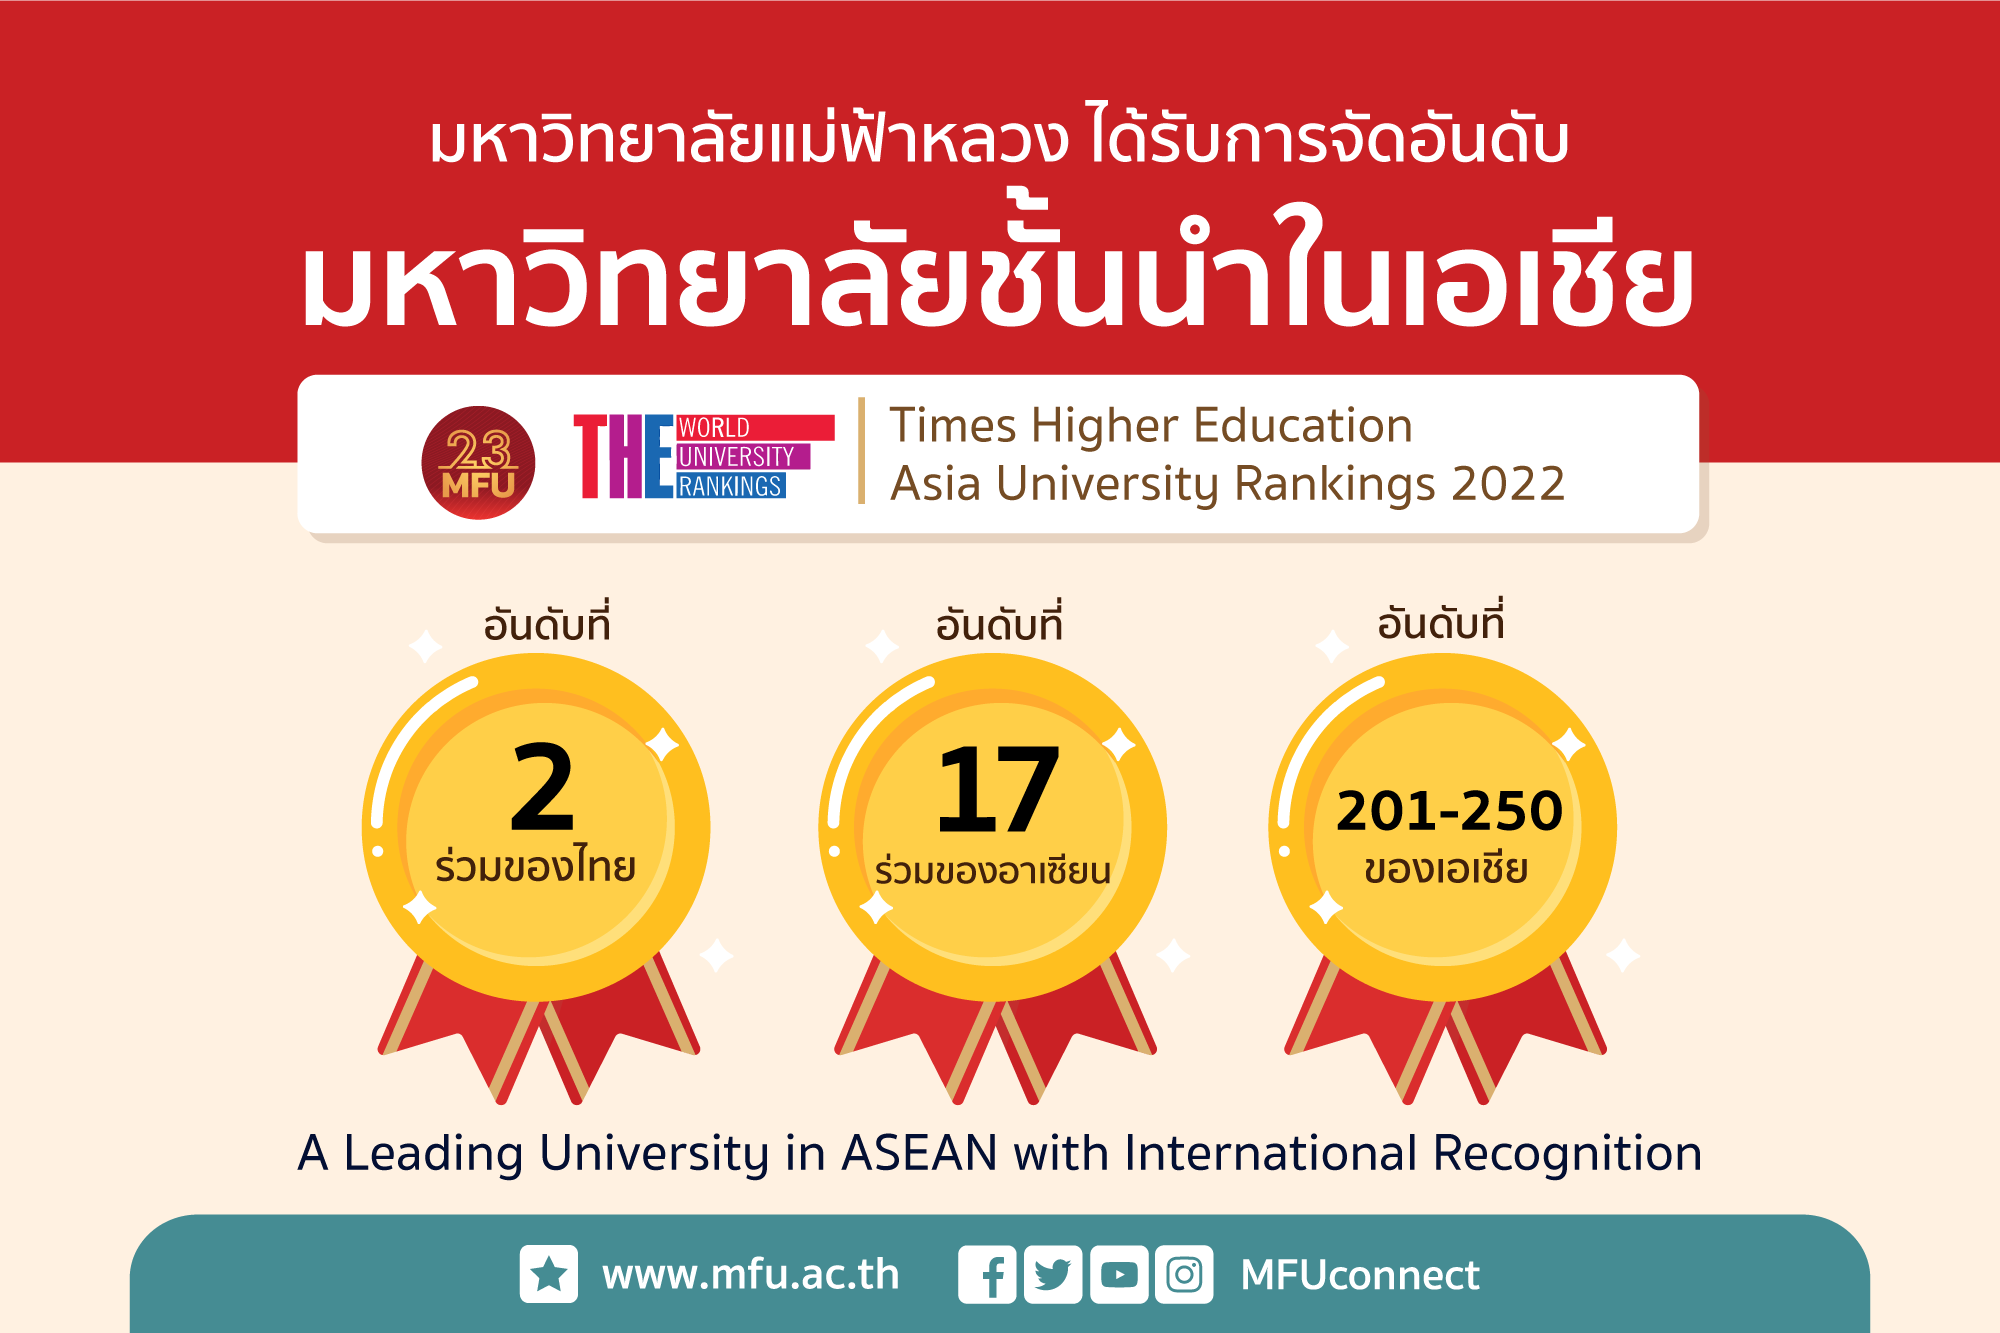 มฟล. ได้รับจัดอันดับมหาวิทยาลัยชั้นนำในเอเชีย : THE Asia University Rankings 2022